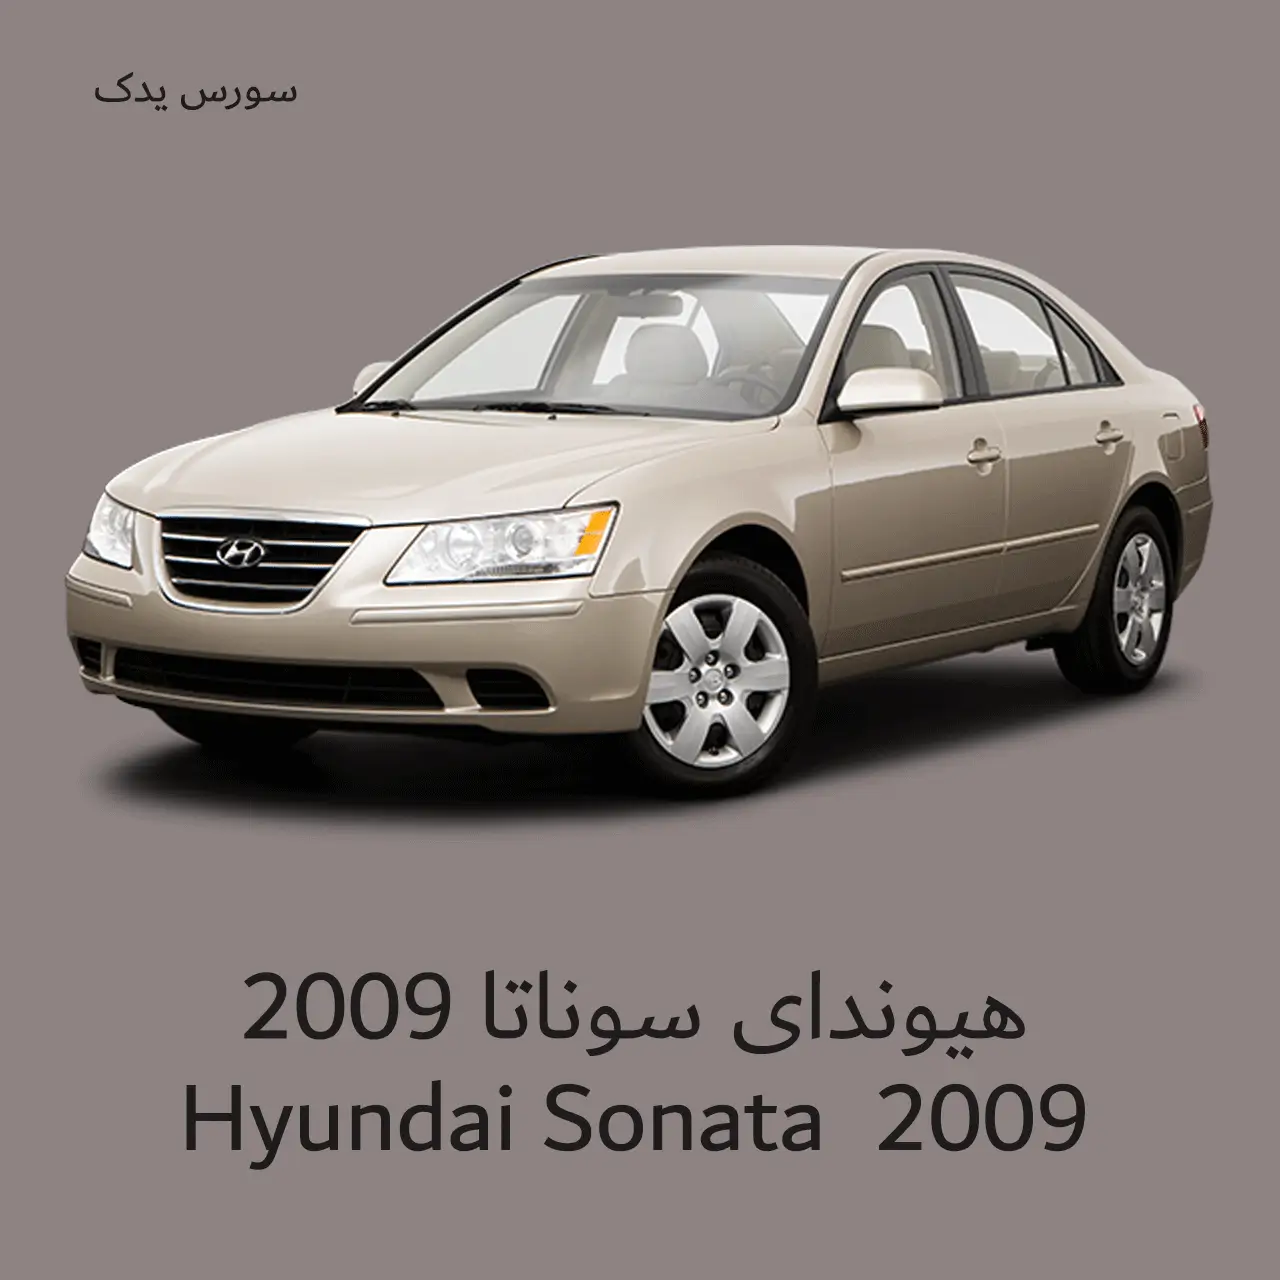 مشخصات و قیمت هیوندای سوناتا 2009